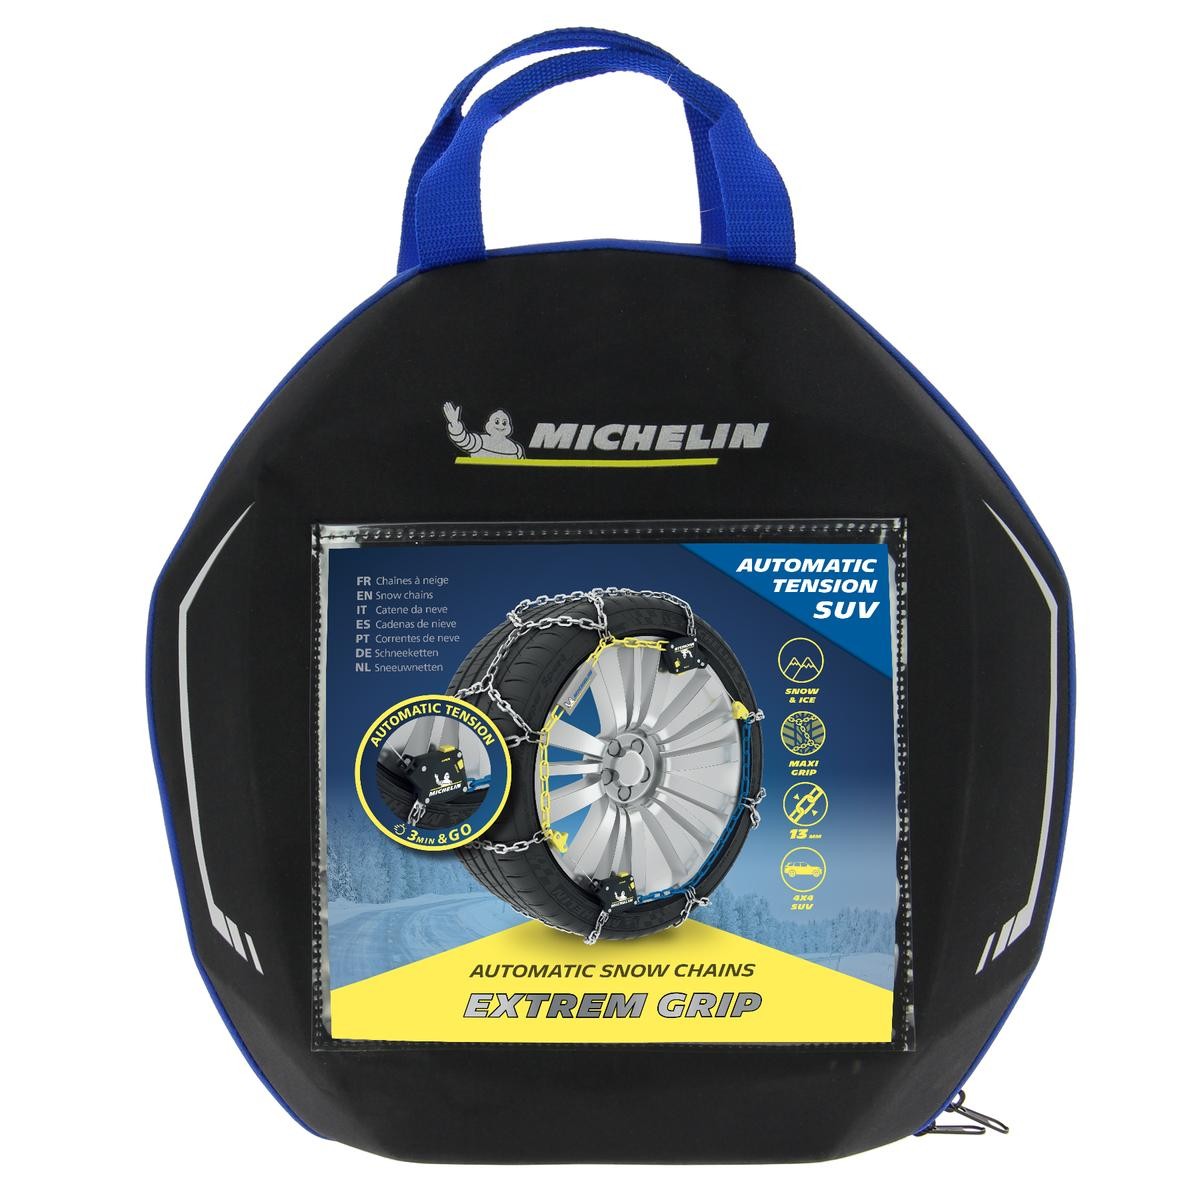 008466 Michelin Extrem Grip Auto 260 008466 Cadenas nieve bolsa de almacenamiento, con guantes de protección, con instrucciones de montaje, Bolsa AUTODOC precio y opinión